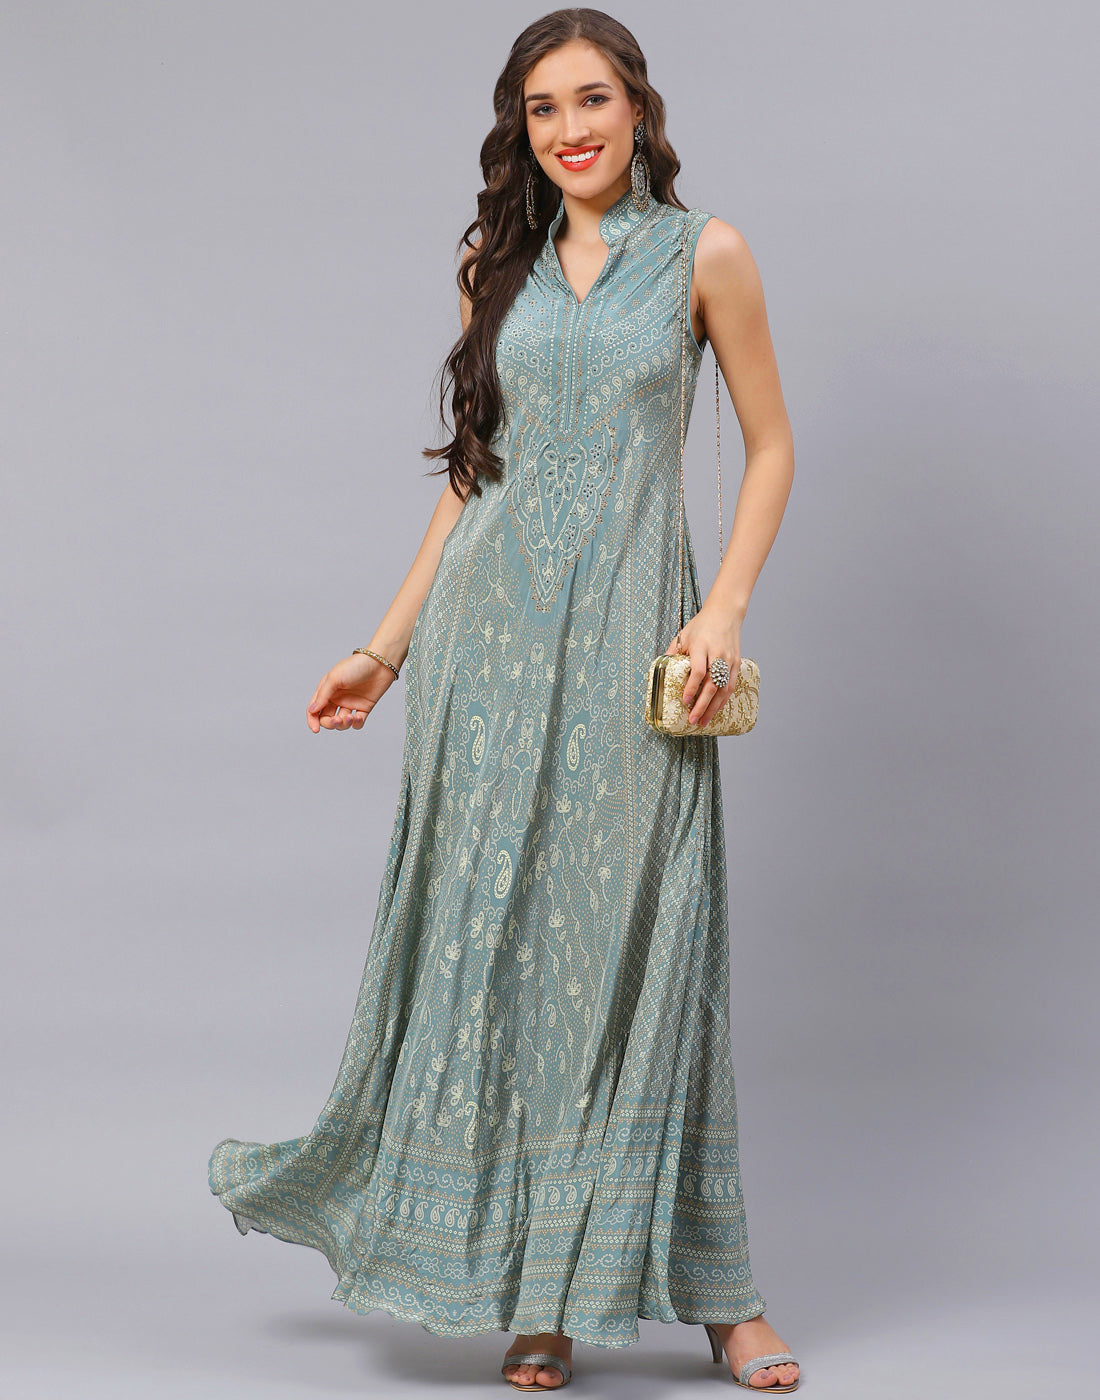 𝐌𝐞𝐞𝐧𝐚 𝐁𝐚𝐳𝐚𝐚𝐫 𝐚𝐭 𝐒𝐨𝐮𝐭𝐡 𝐄𝐱𝐭𝐞𝐧𝐬𝐢𝐨𝐧 | Party wear  sarees, Meena bazaar, Ethnic dress